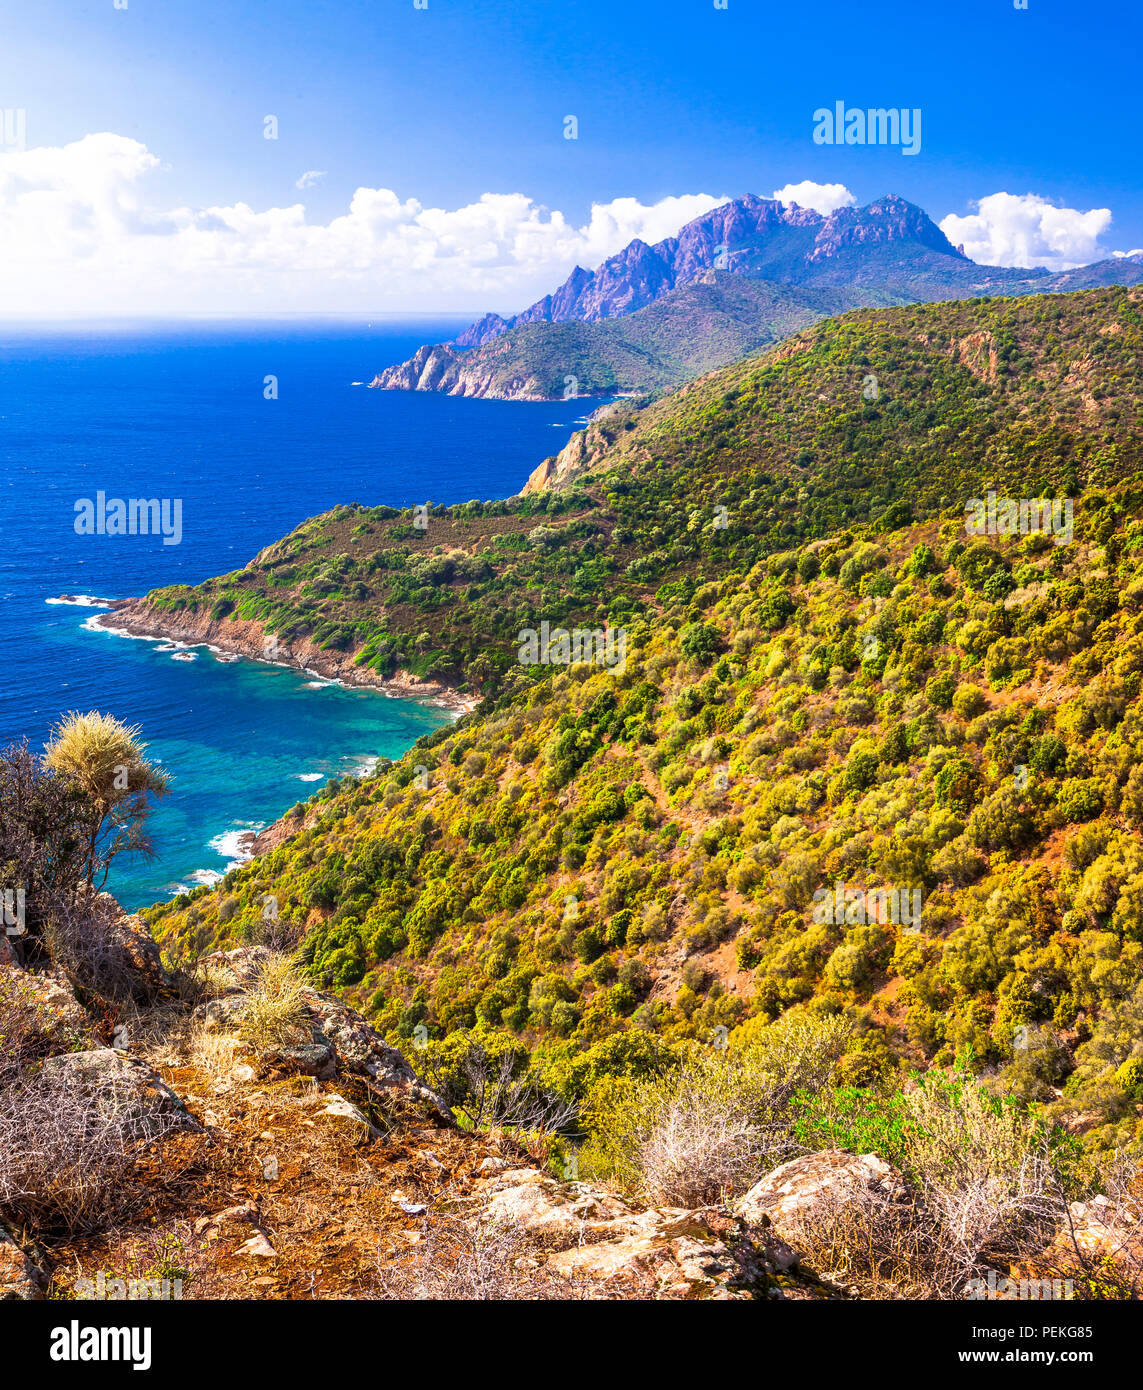 Impresionante paisaje escénico,con vista mar y montaña,Calanques,Córcega, Francia. Foto de stock